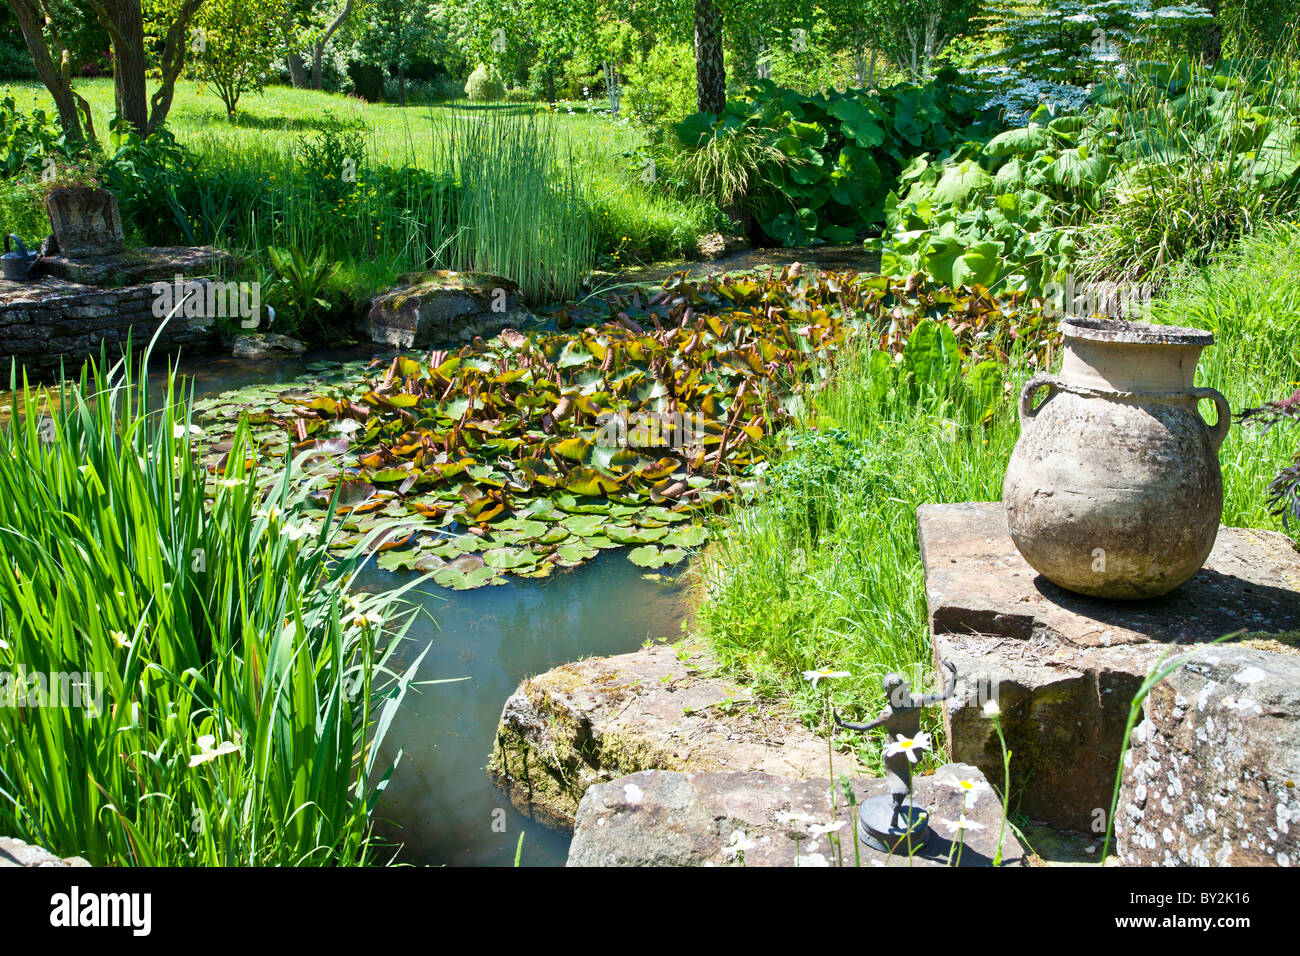 Agua de un pequeño estanque con nenúfares y otras plantas acuáticas y una urna de piedra rústica en inglés un país jardín en verano Foto de stock